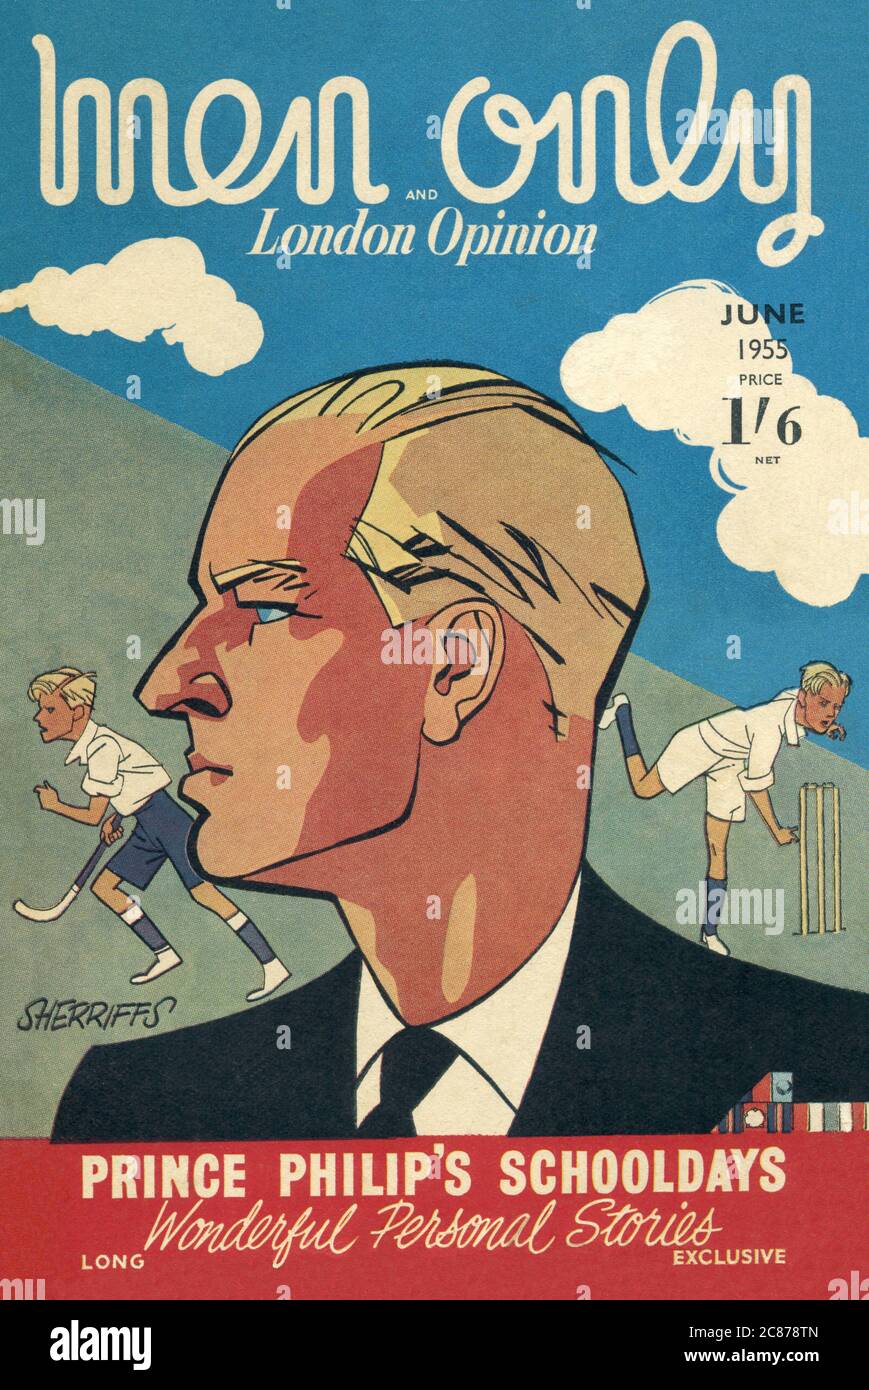 Couverture du magazine Men Only et London opinion - juin 1955 - Prince Philip's Schooldays, présentant des « histoires personnelles merveilleuses ». Date: 1955 Banque D'Images